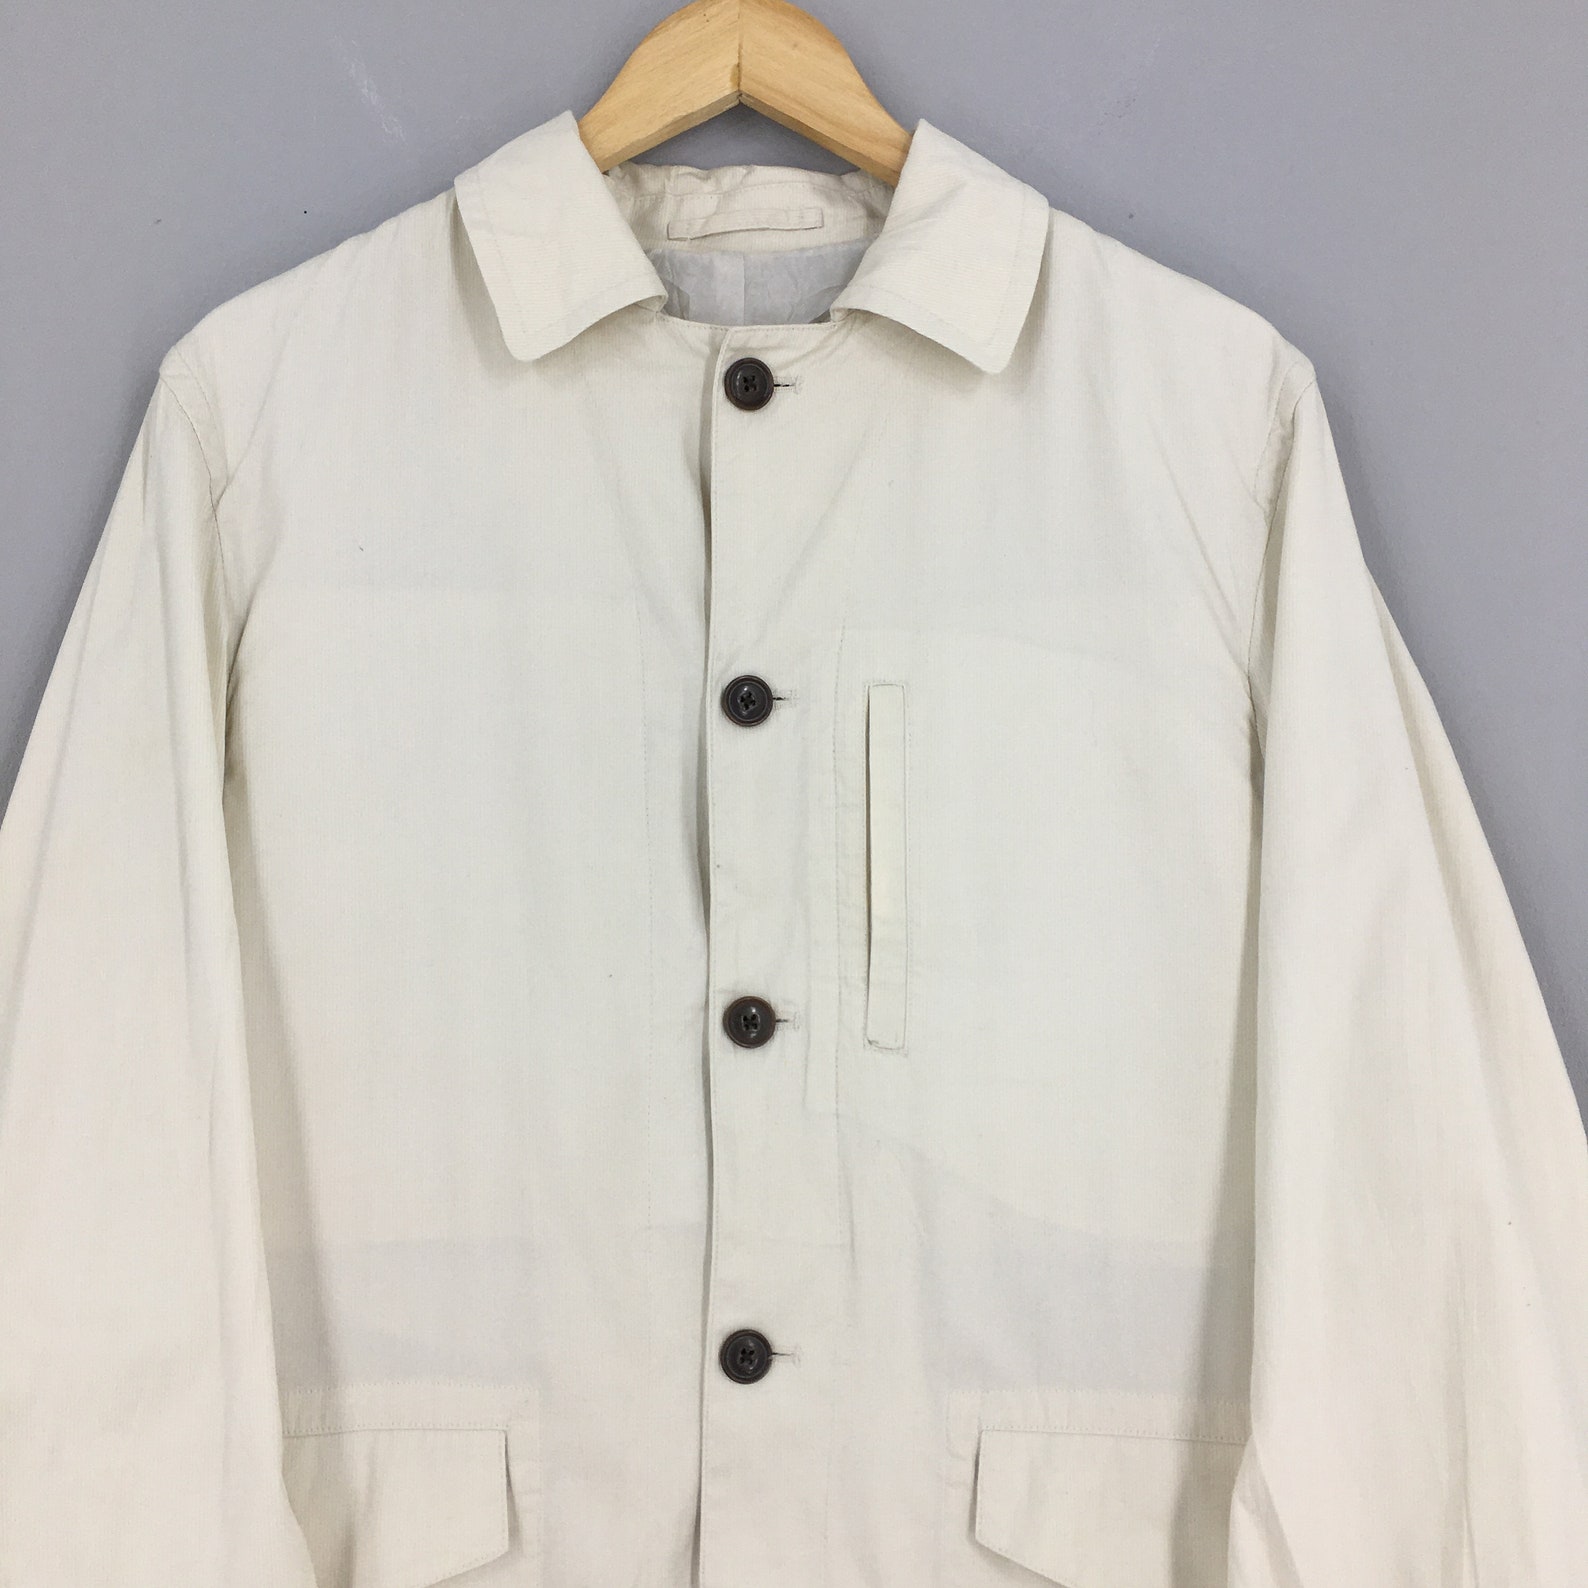 Vintage Casual Workers Jacket Medium 1990's Workwear | Etsy